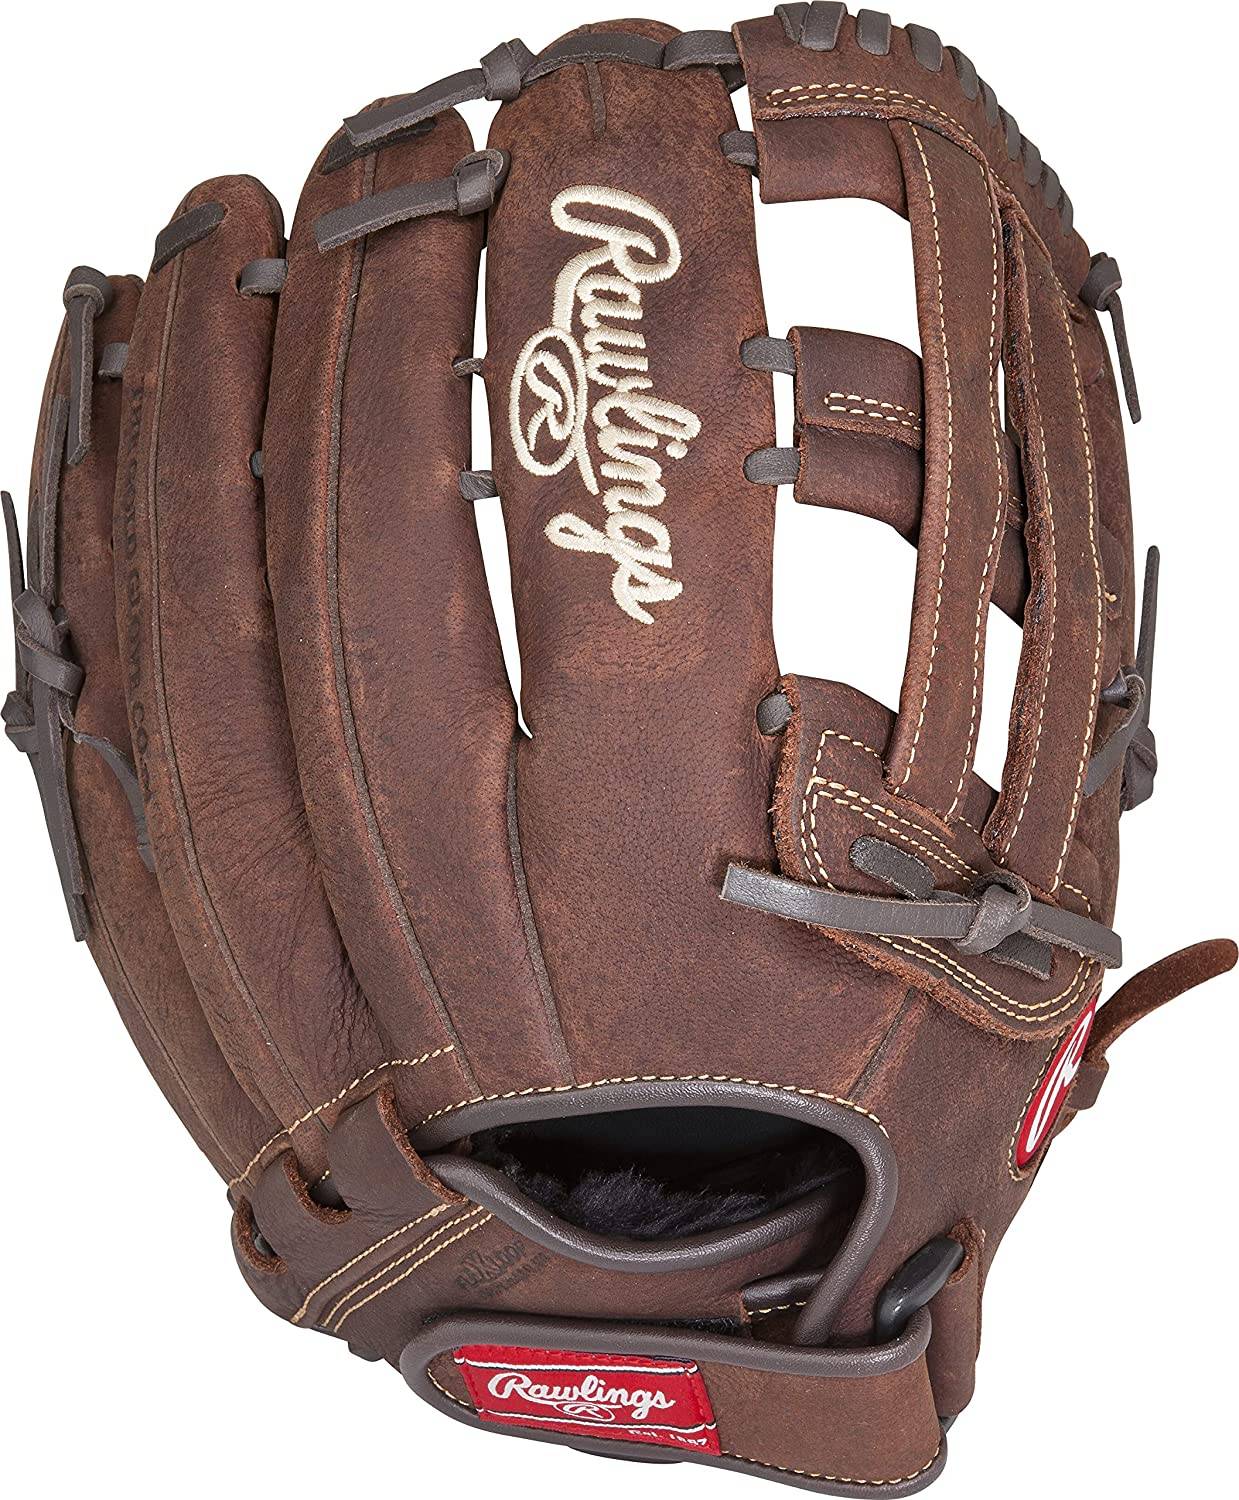 Rawlings Player Preferred Baseball Slow Pitch Softball Glove